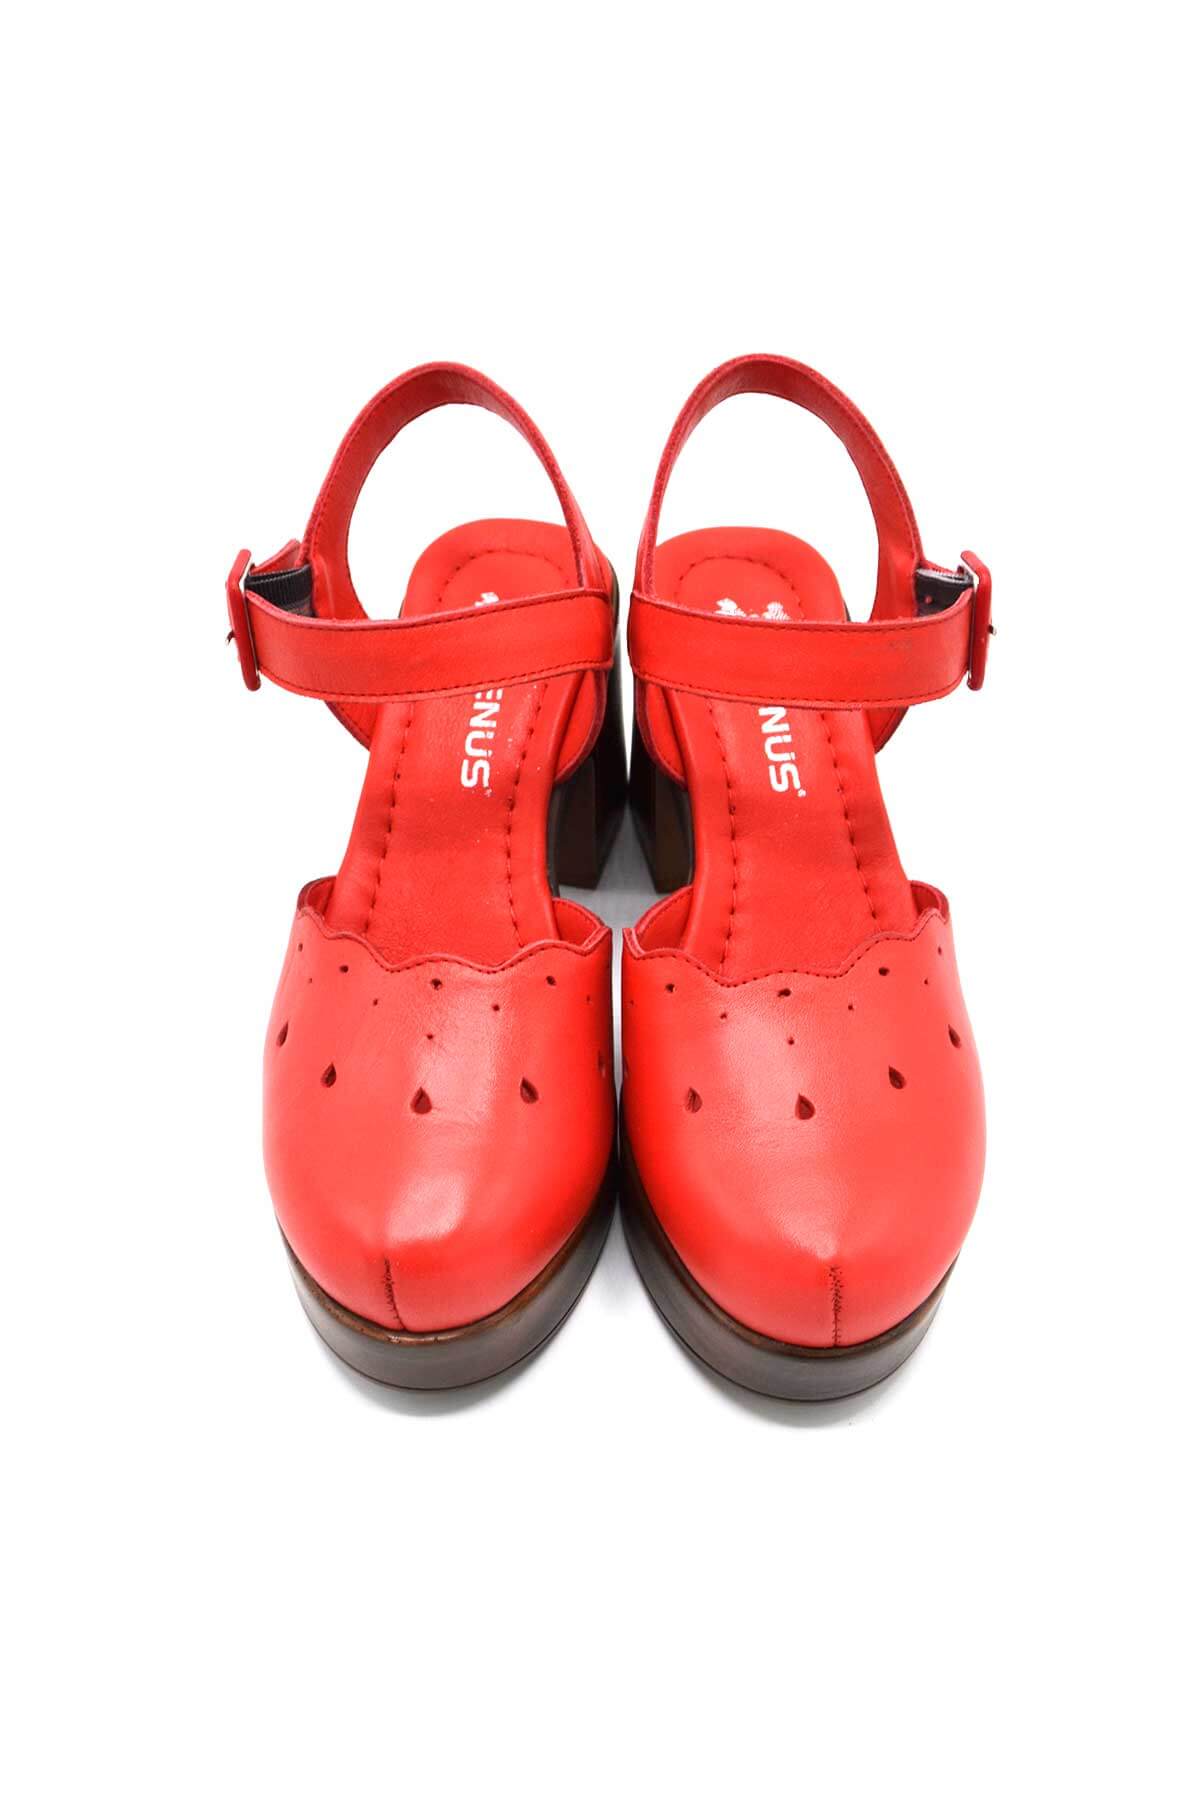 Kadın Apartman Topuk Deri Sandalet Kırmızı 2217001Y